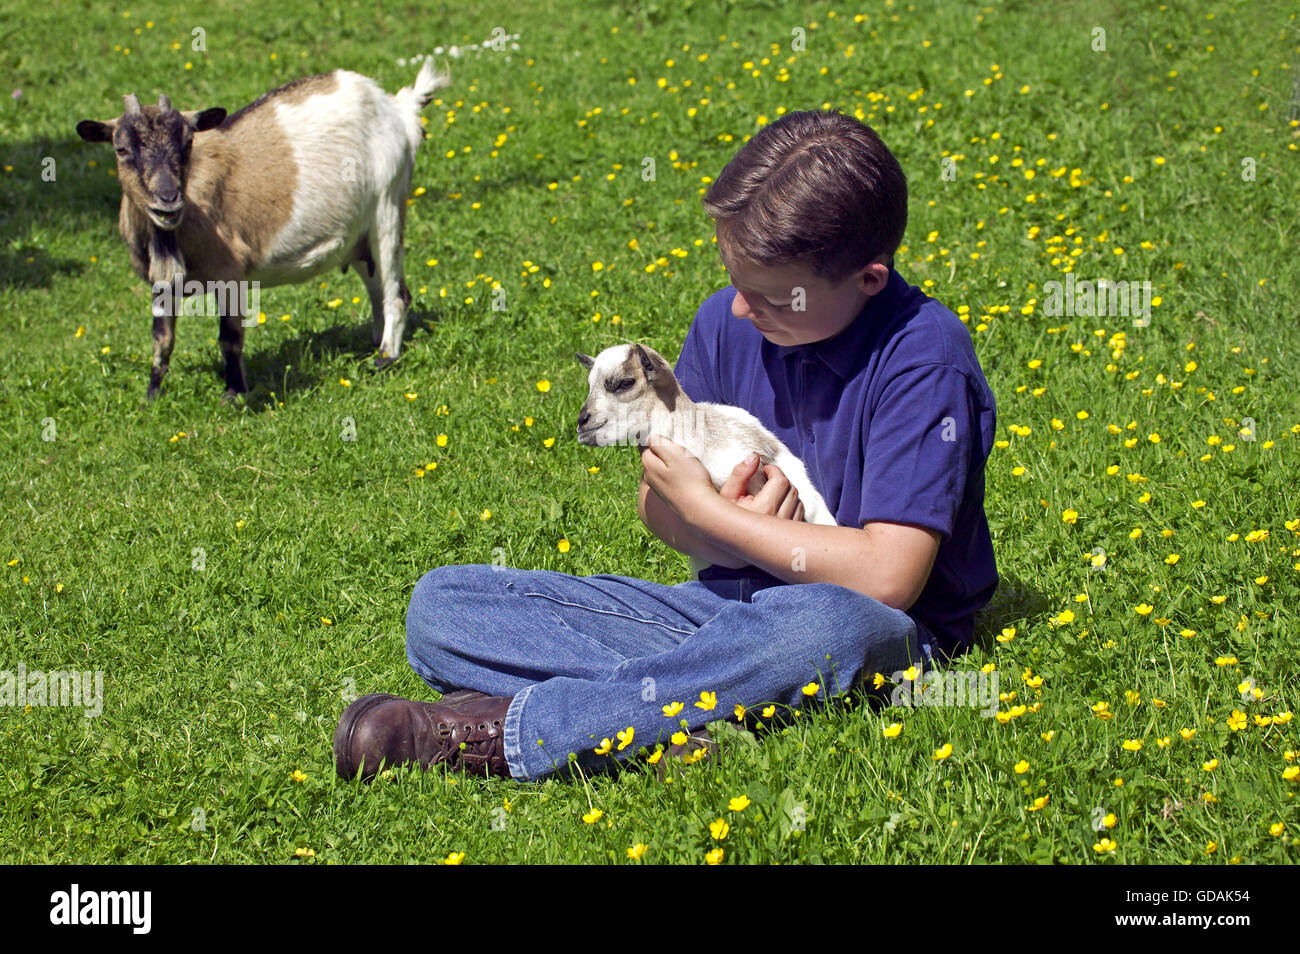 Jeune garçon tenant une chèvre Pygmée Banque D'Images